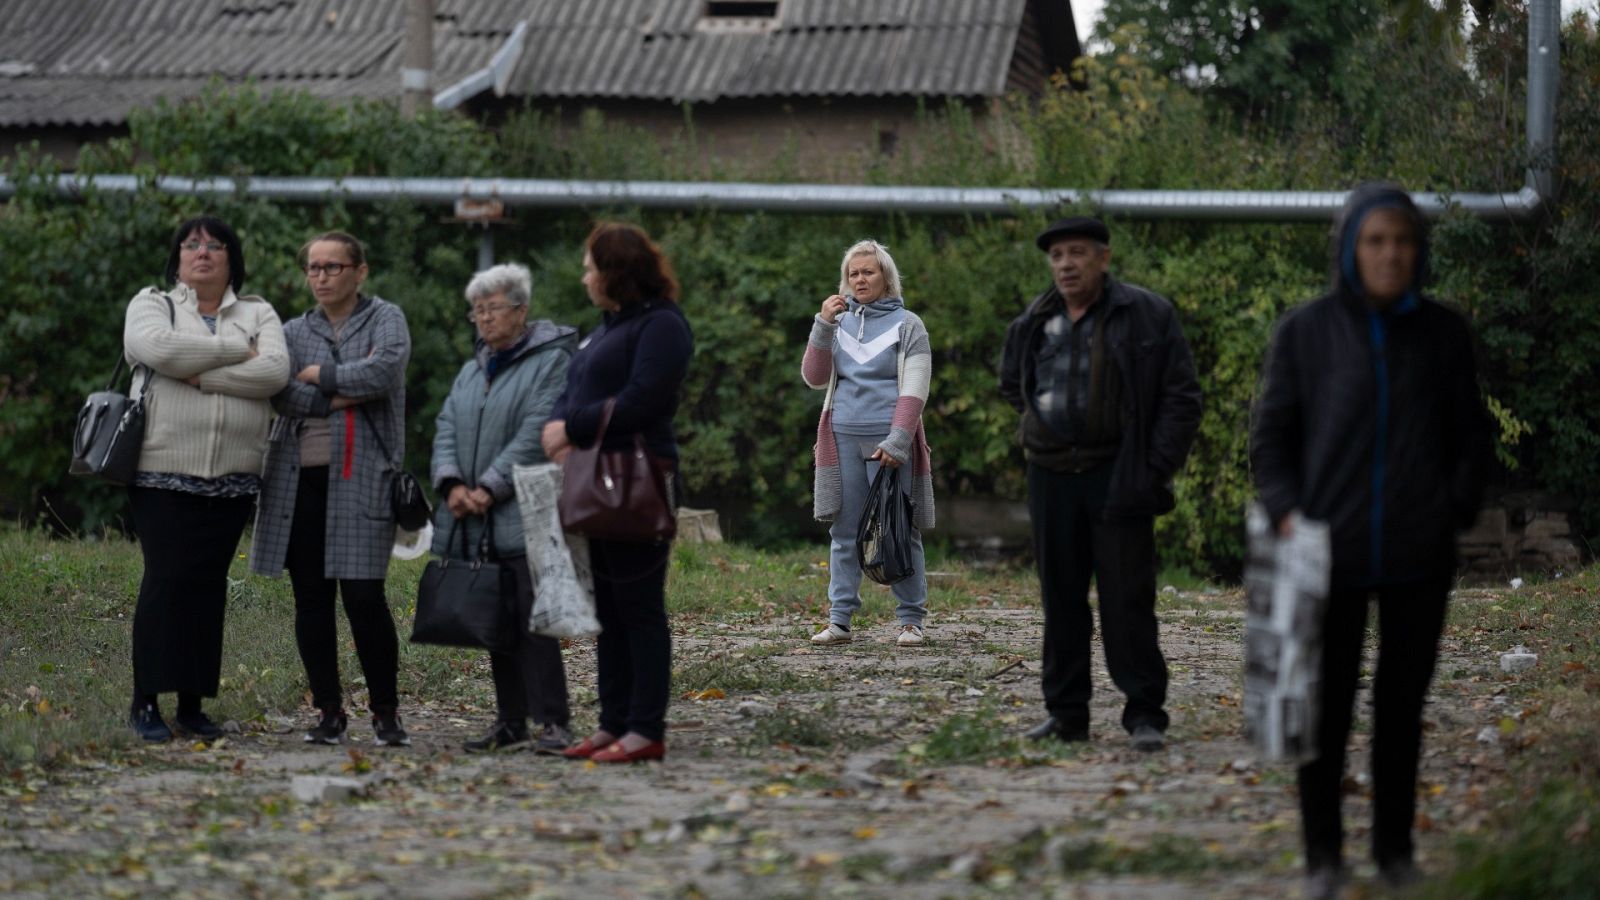 Los vecinos de Zaporiyia tras el referéndum: "Es un invento. Ese territorio es nuestro, vamos a volver y recuperarlo"